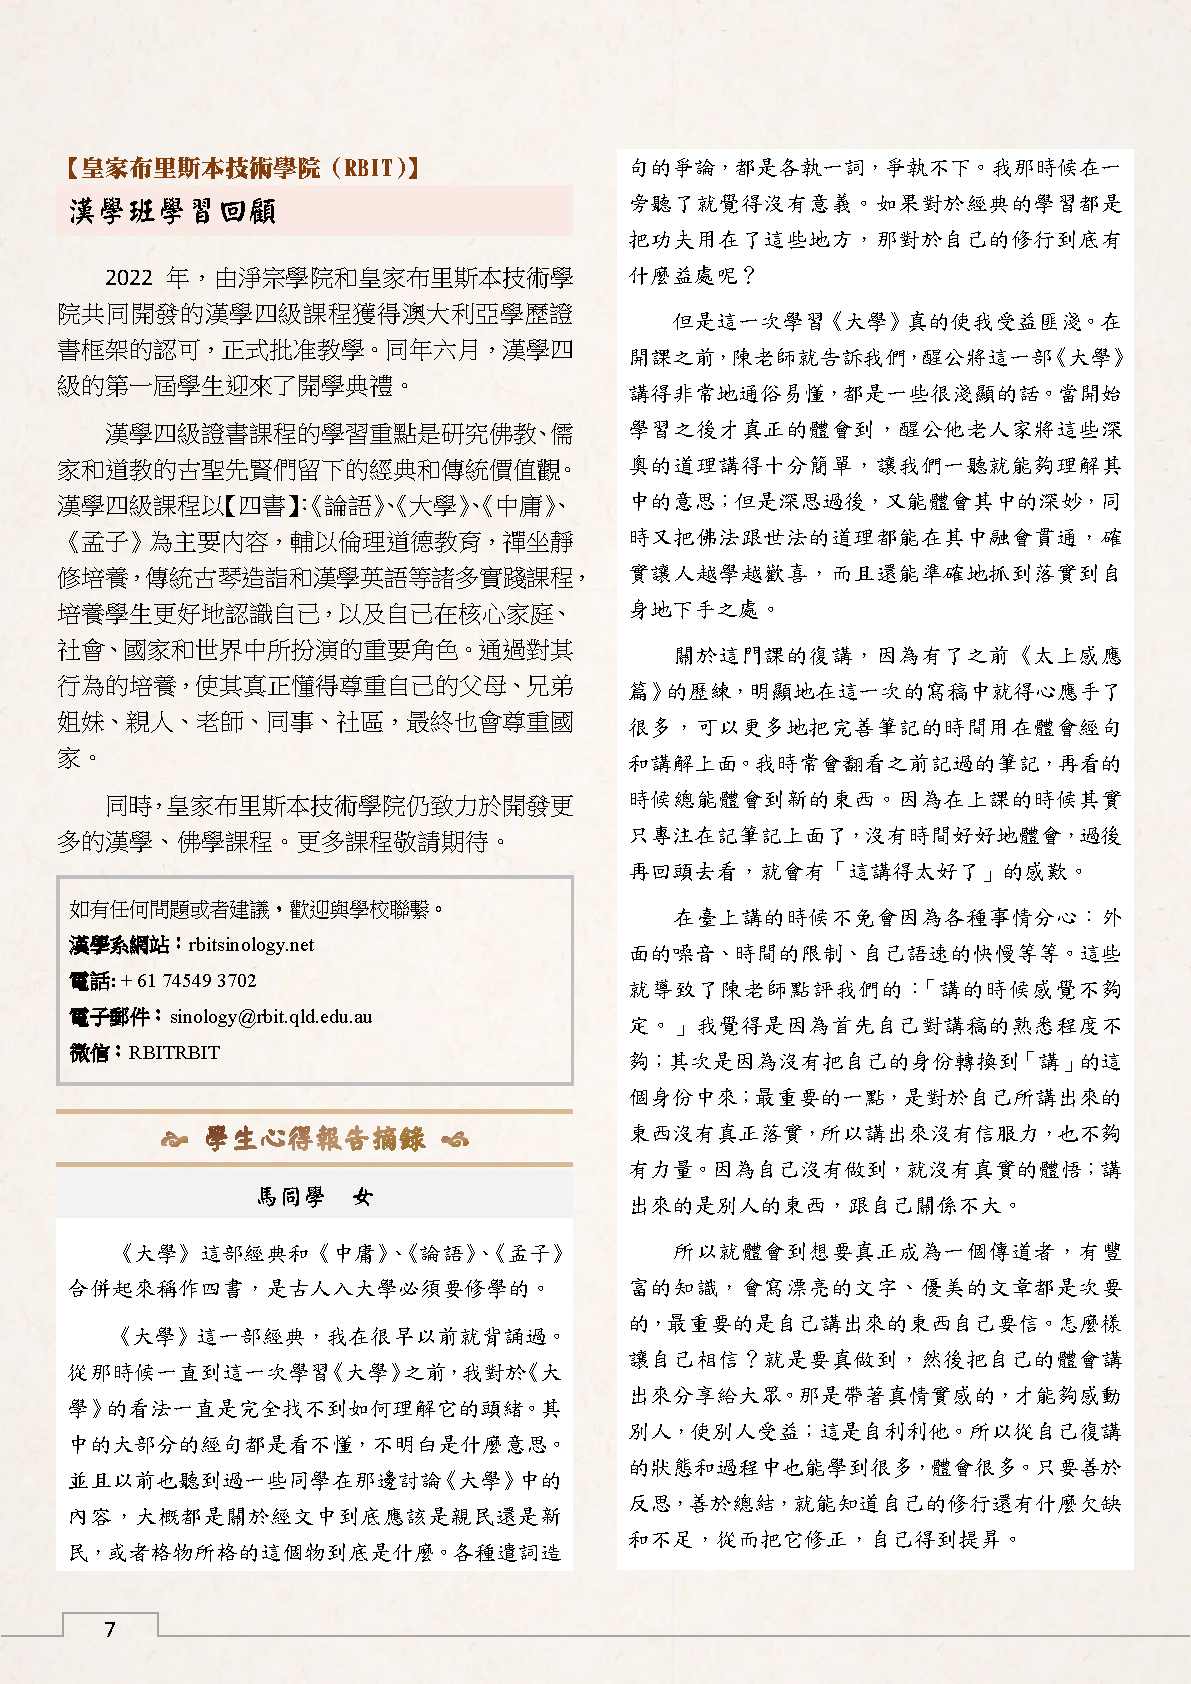 淨宗學院季刊-2022.12-Issue 16,17-v.1.3_Page 7